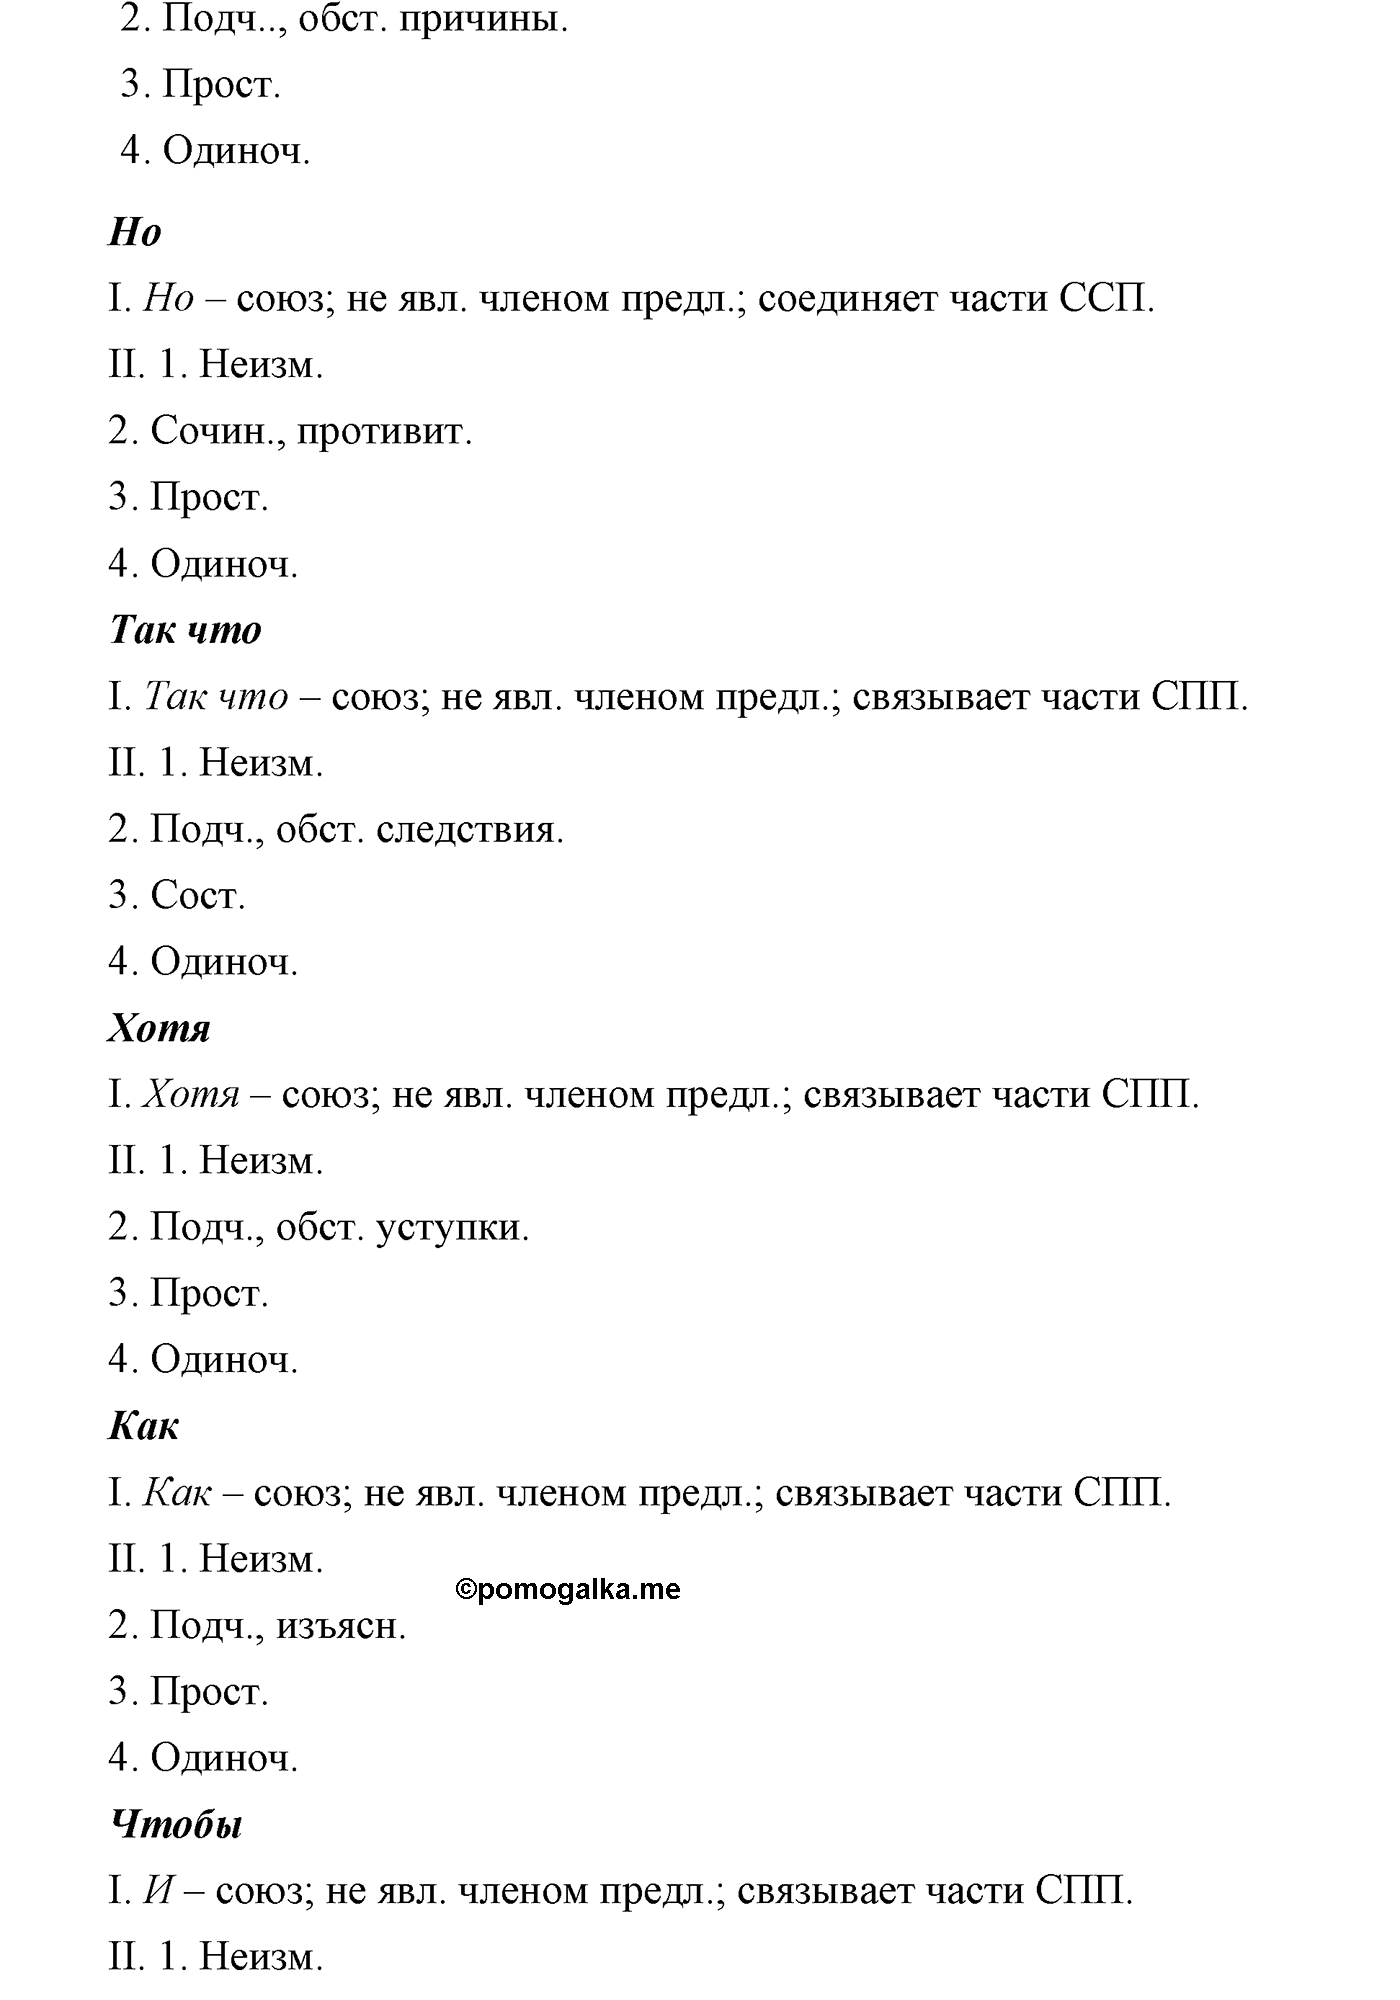 страница 110 упражнение 204 русский язык 9 класс Львова учебник 2012 год